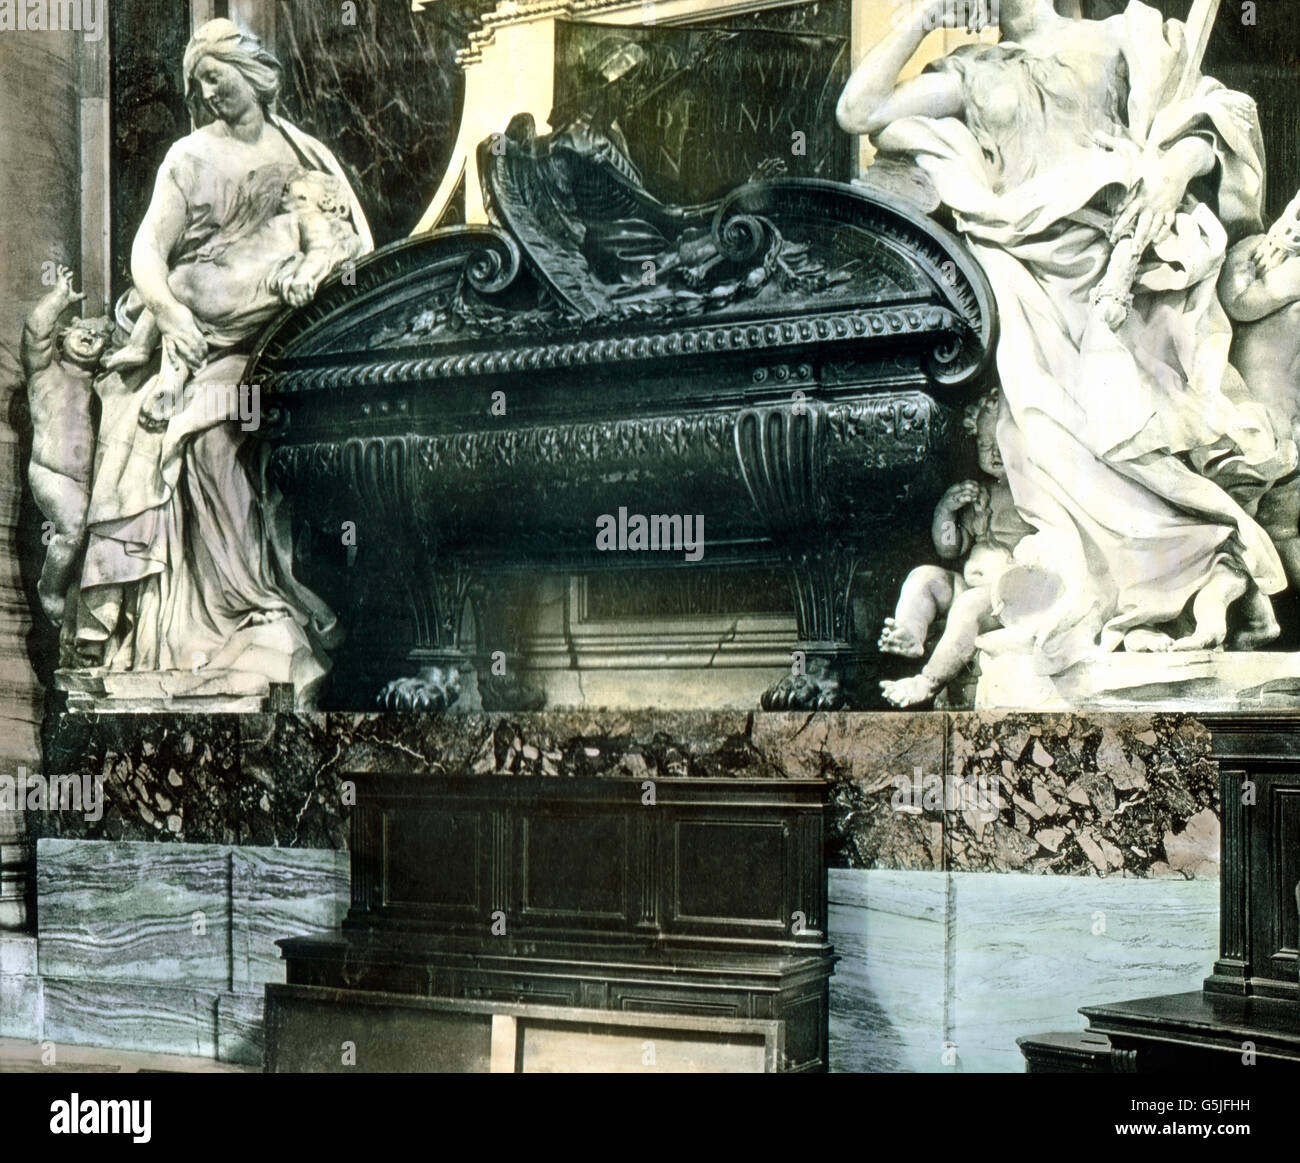 Das Grabmal von Papst Urbano VIII. im Petersdom in Rom, Italien 1920er Jahre. Tomba di Papa Urbano VIII presso la cattedrale di San Pietro in Roma, Italia 1920s. Foto Stock